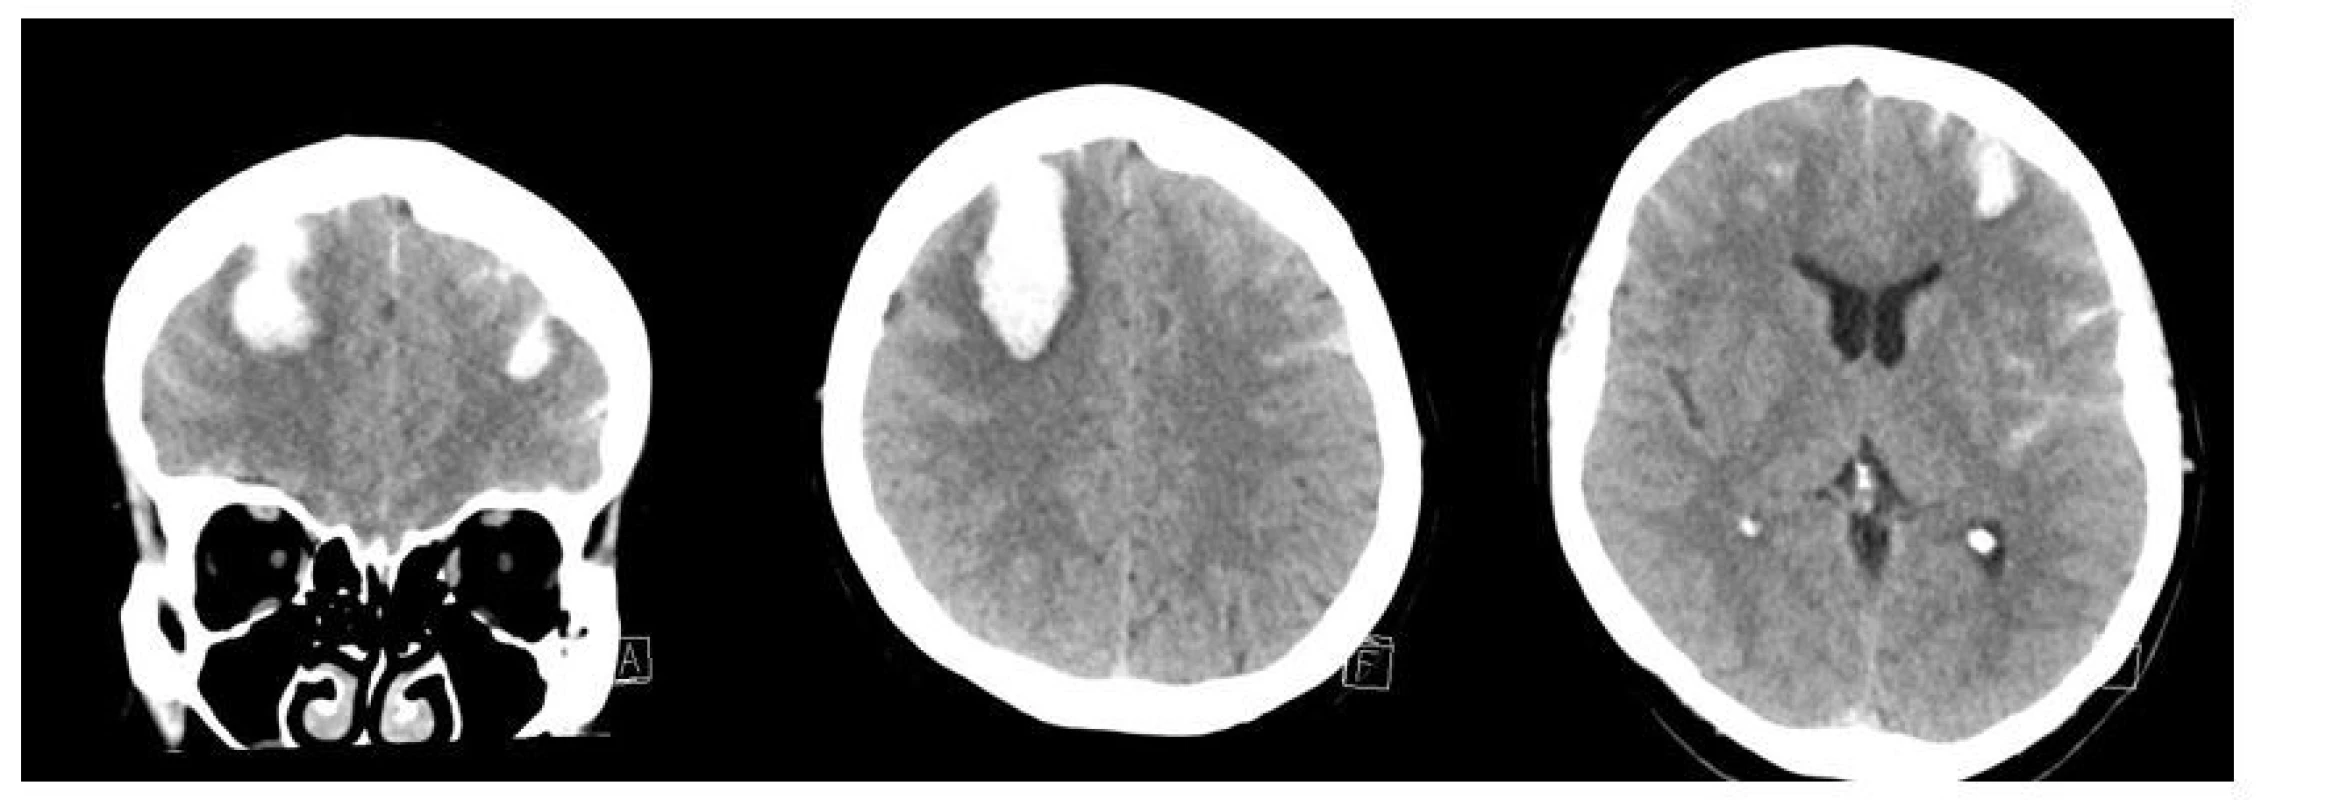 Vstupní vyšetření CT mozku. <br>
Fig. 2. Initial CT scan of the brain.
